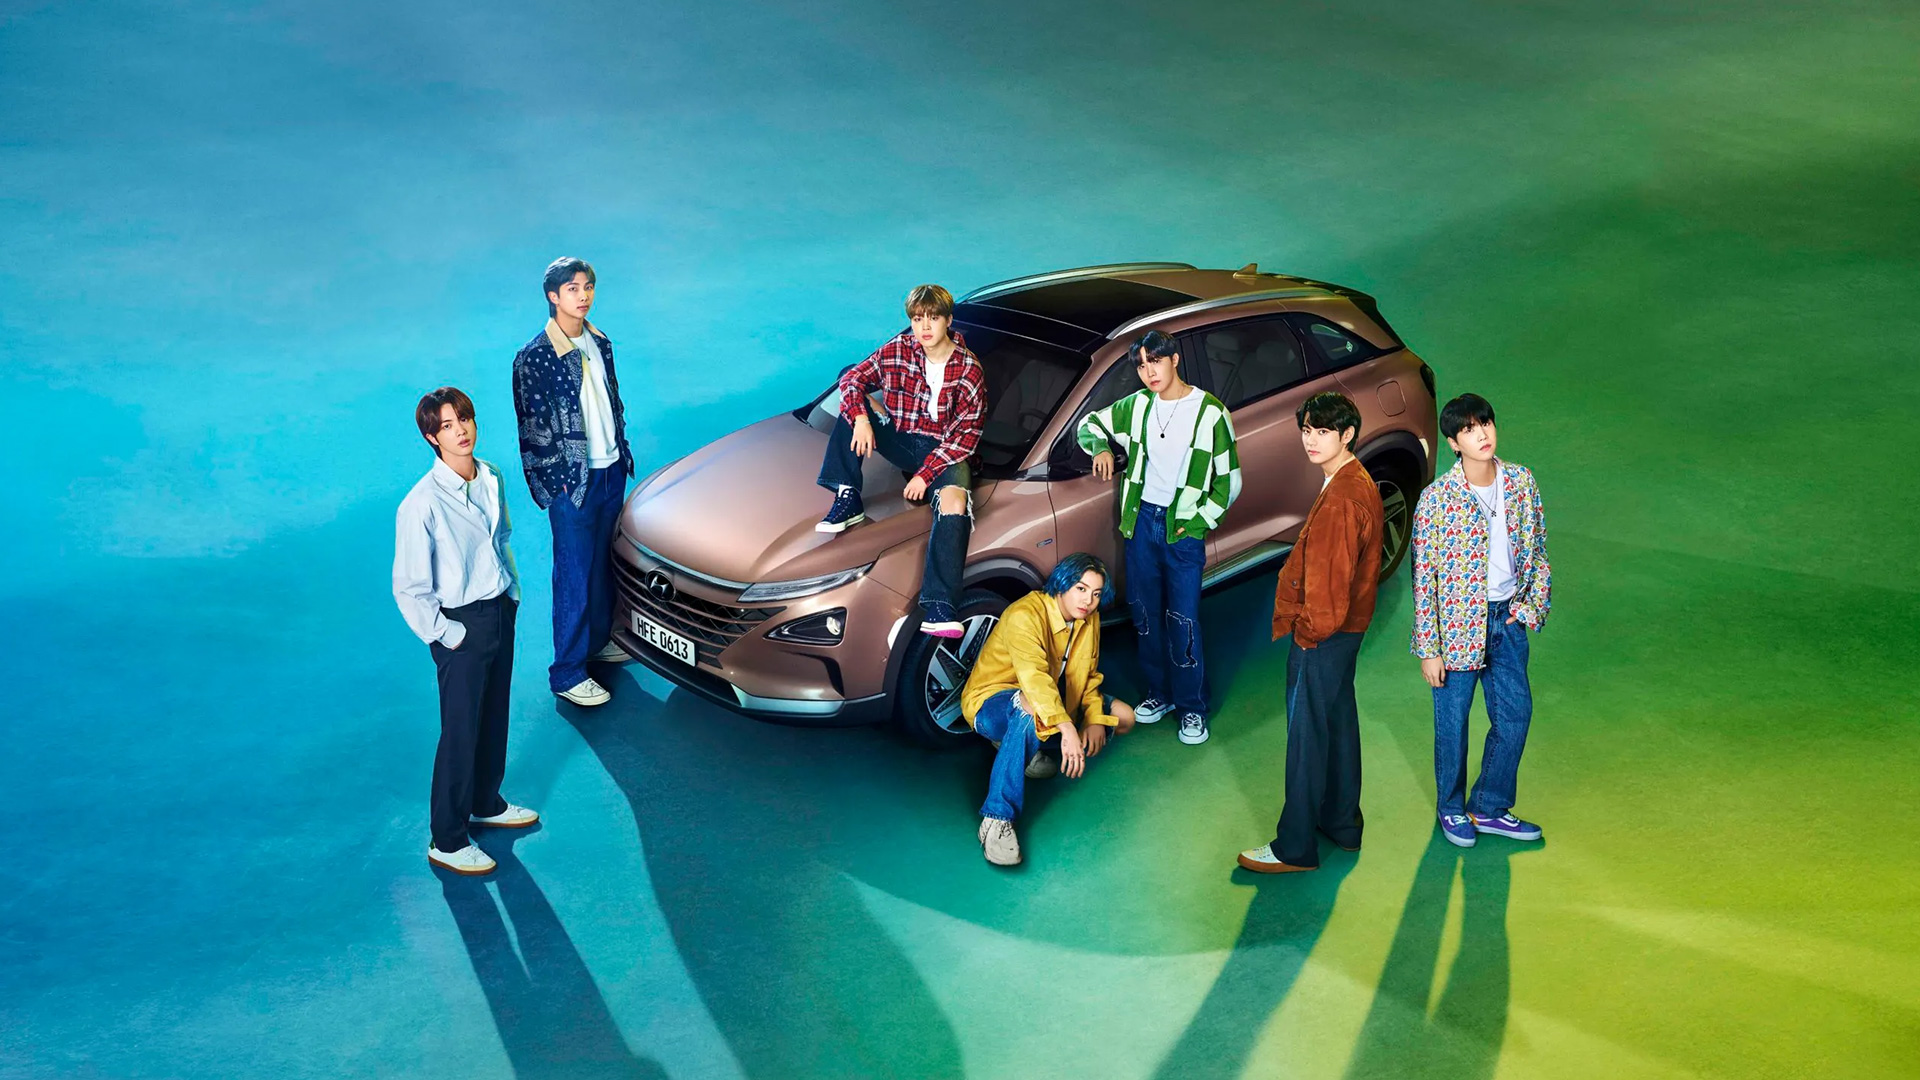 캐쥬얼 의상의 BTS가 현대자동차와 함께 서 있는 모습